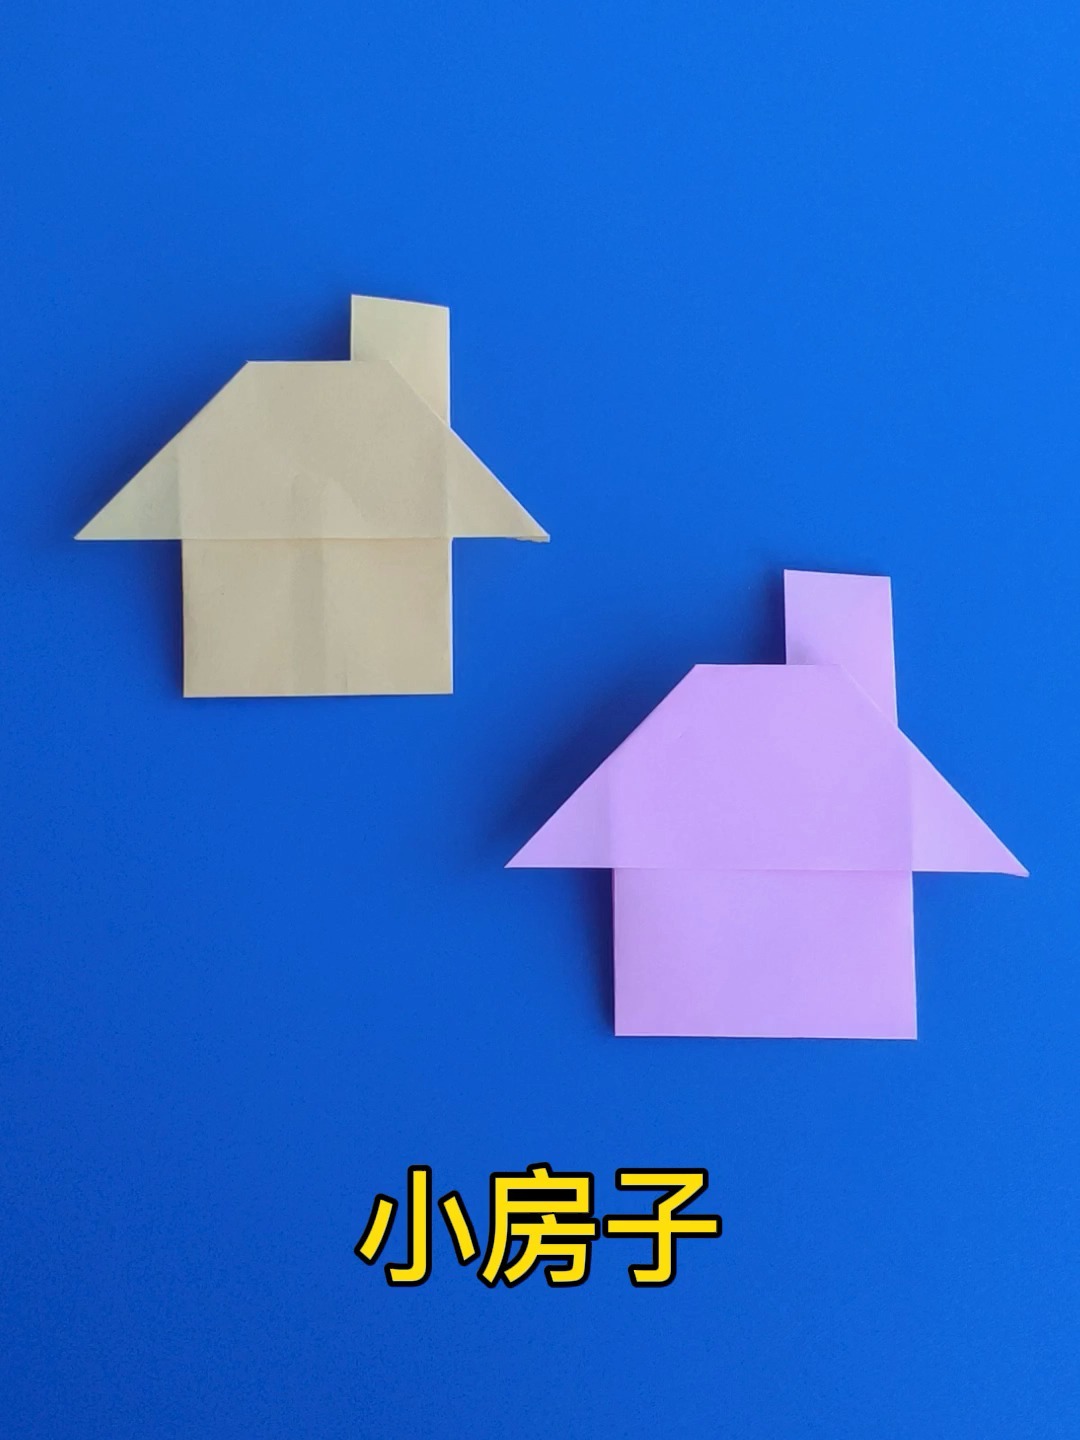 折纸小房子简单折法,一张纸折漂亮的小房子